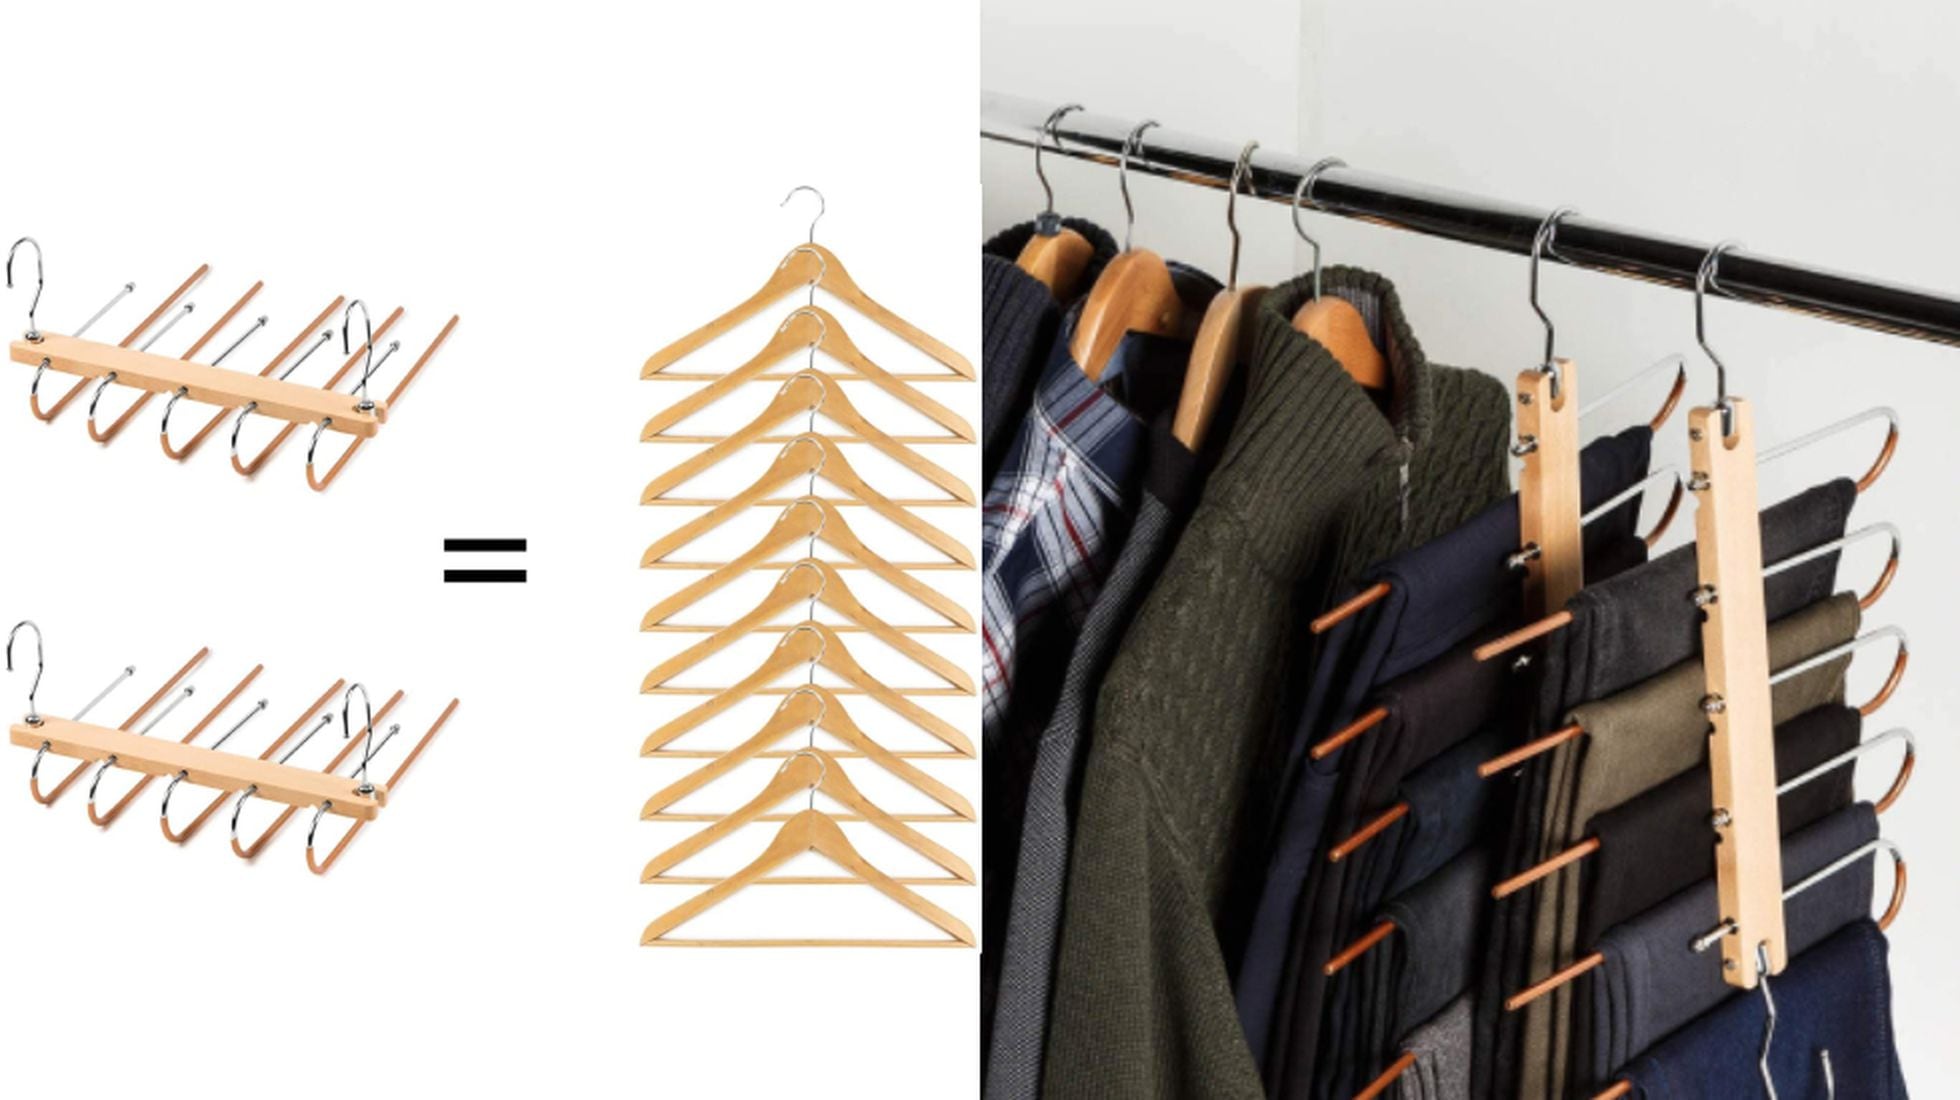 13 perchas para ahorrar espacio la ropa del armario de un solo vistazo | compras y ofertas | PAÍS